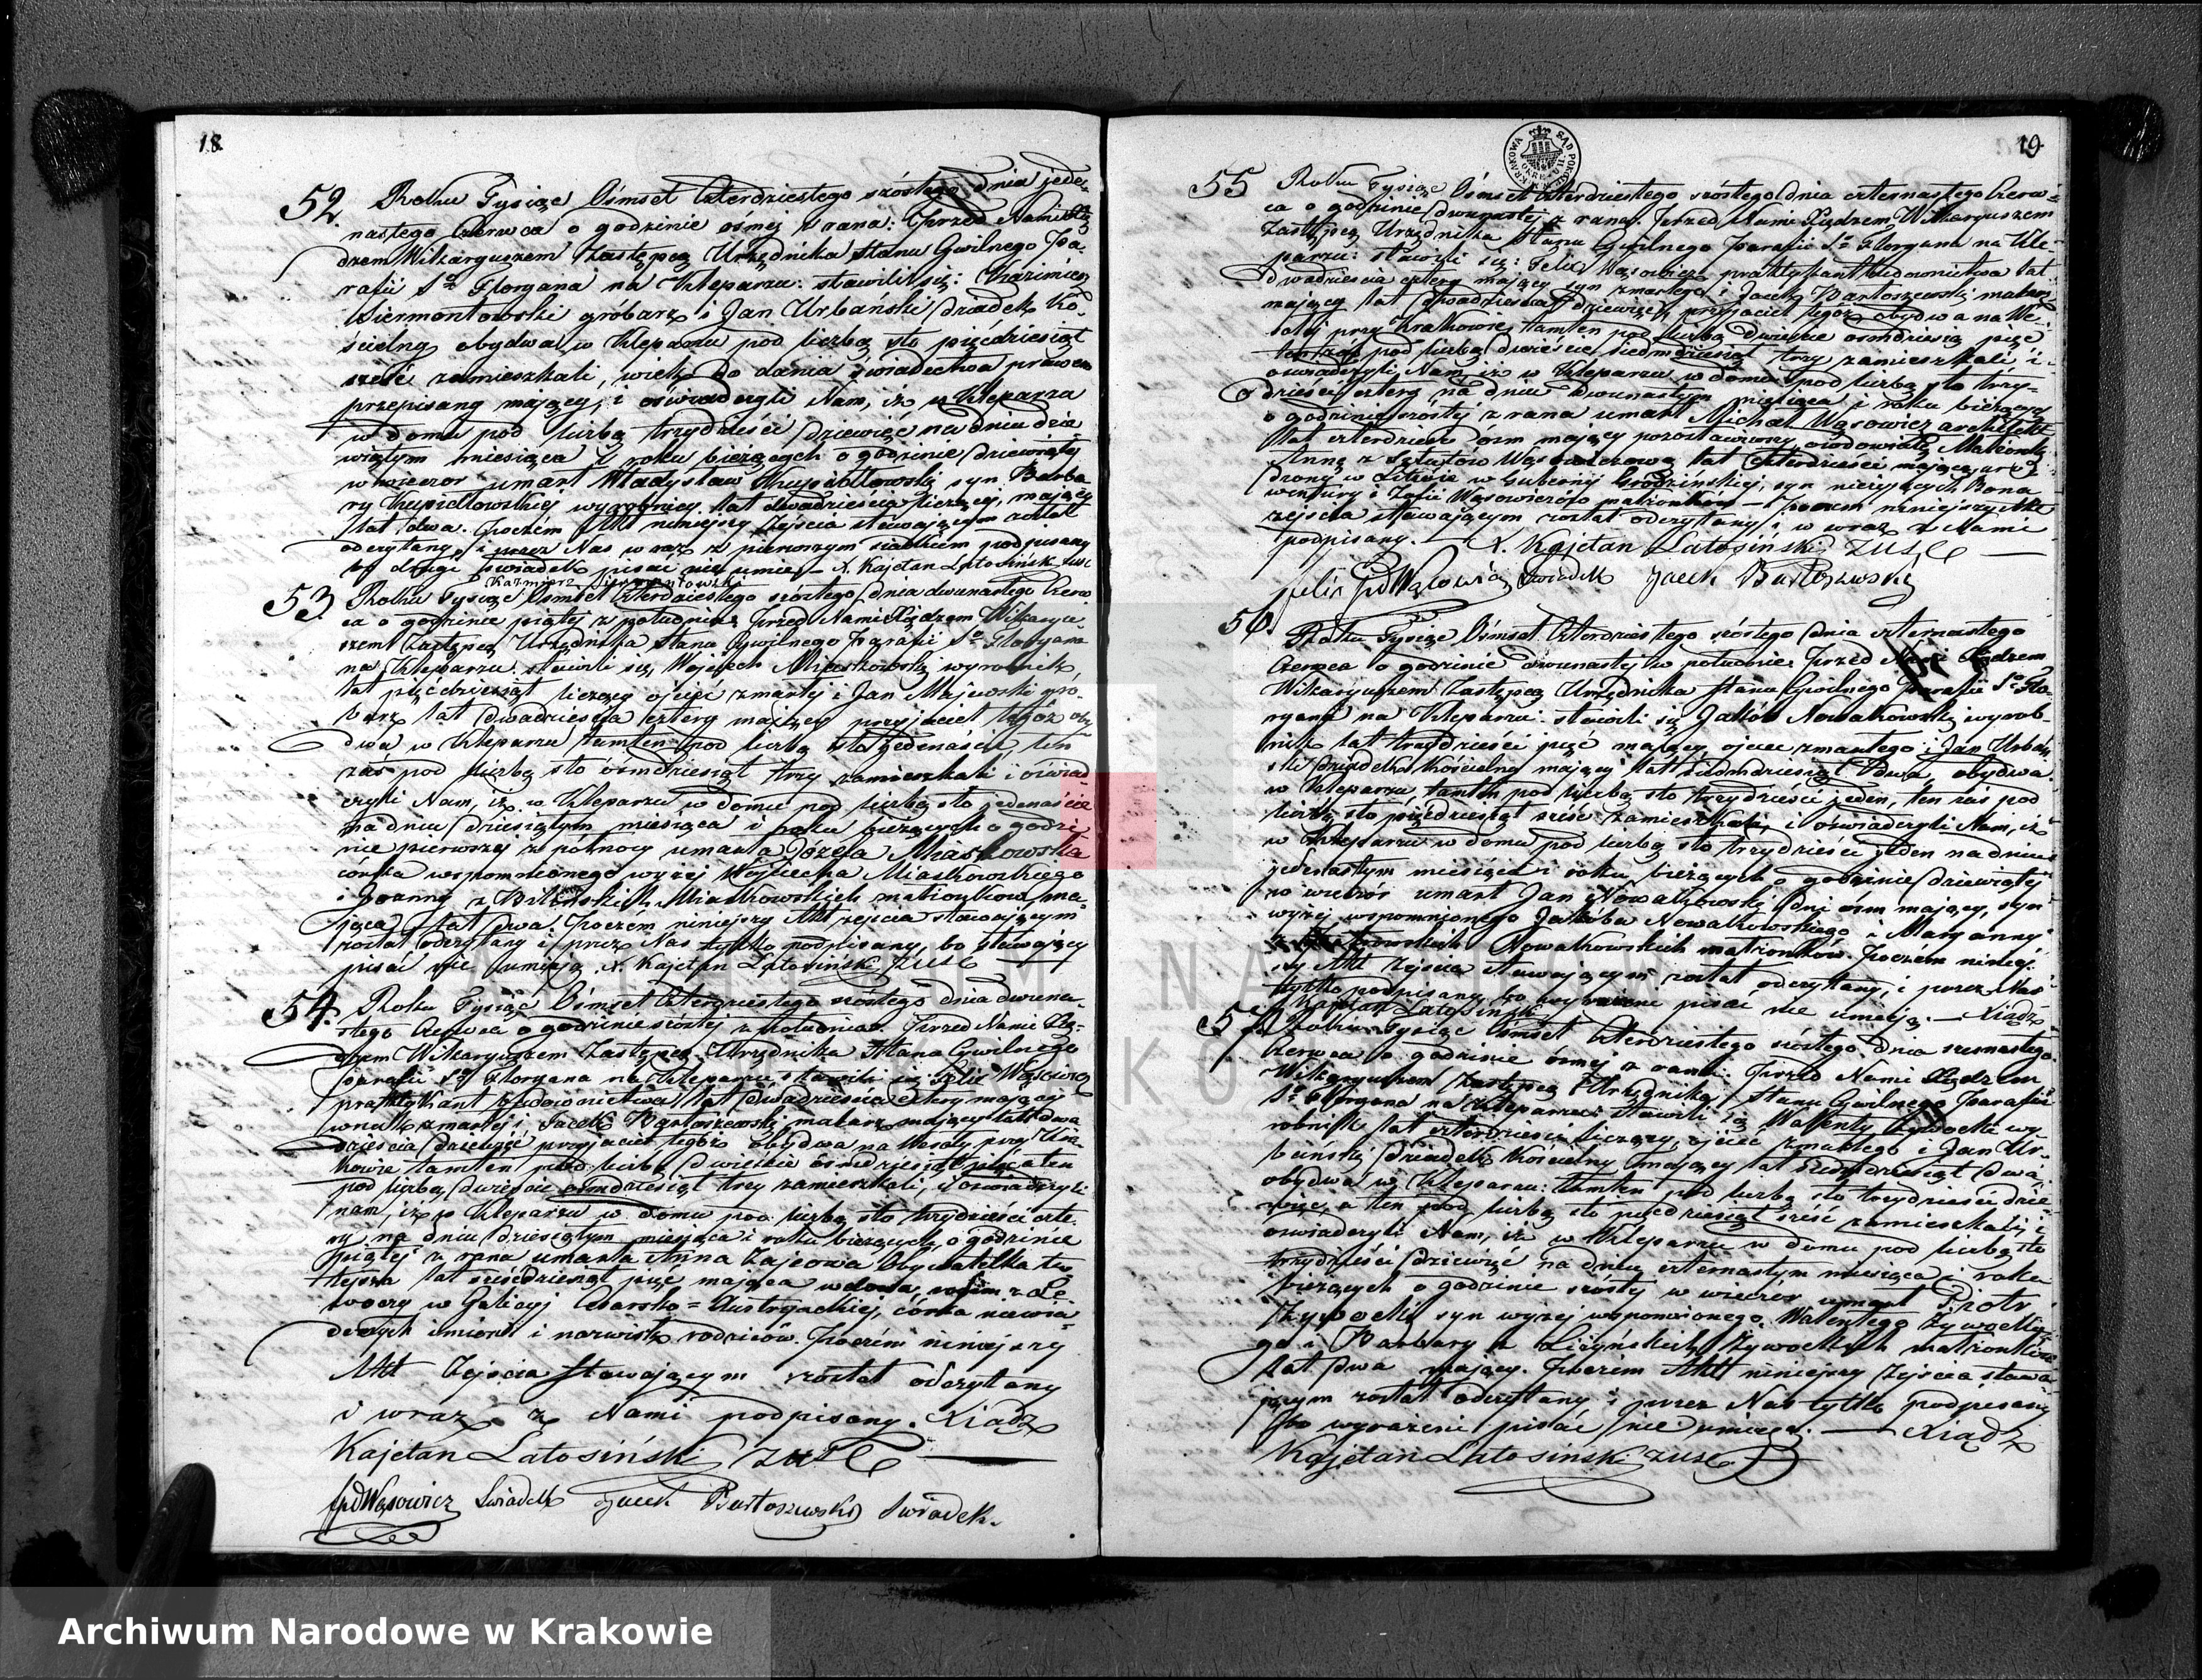 Skan z jednostki: Księga Aktów Zejścia dla Parafii So. Floryana na Kleparzu na rok 1846 sporządzona